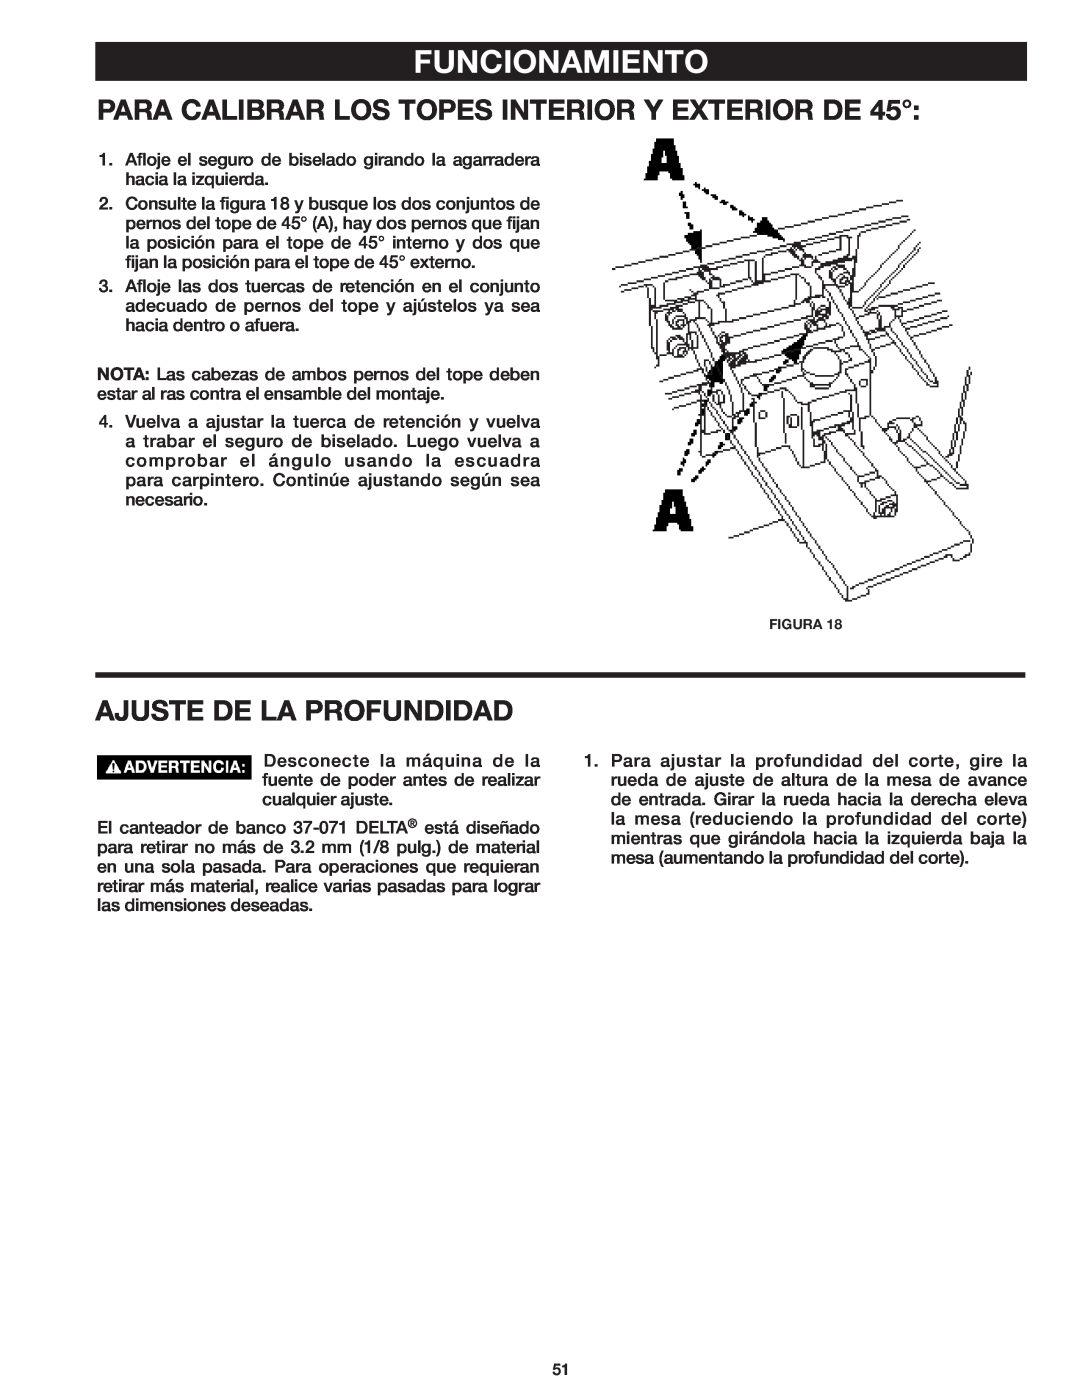 Delta 37-071 instruction manual Para Calibrar Los Topes Interior Y Exterior De, Ajuste De La Profundidad, Funcionamiento 